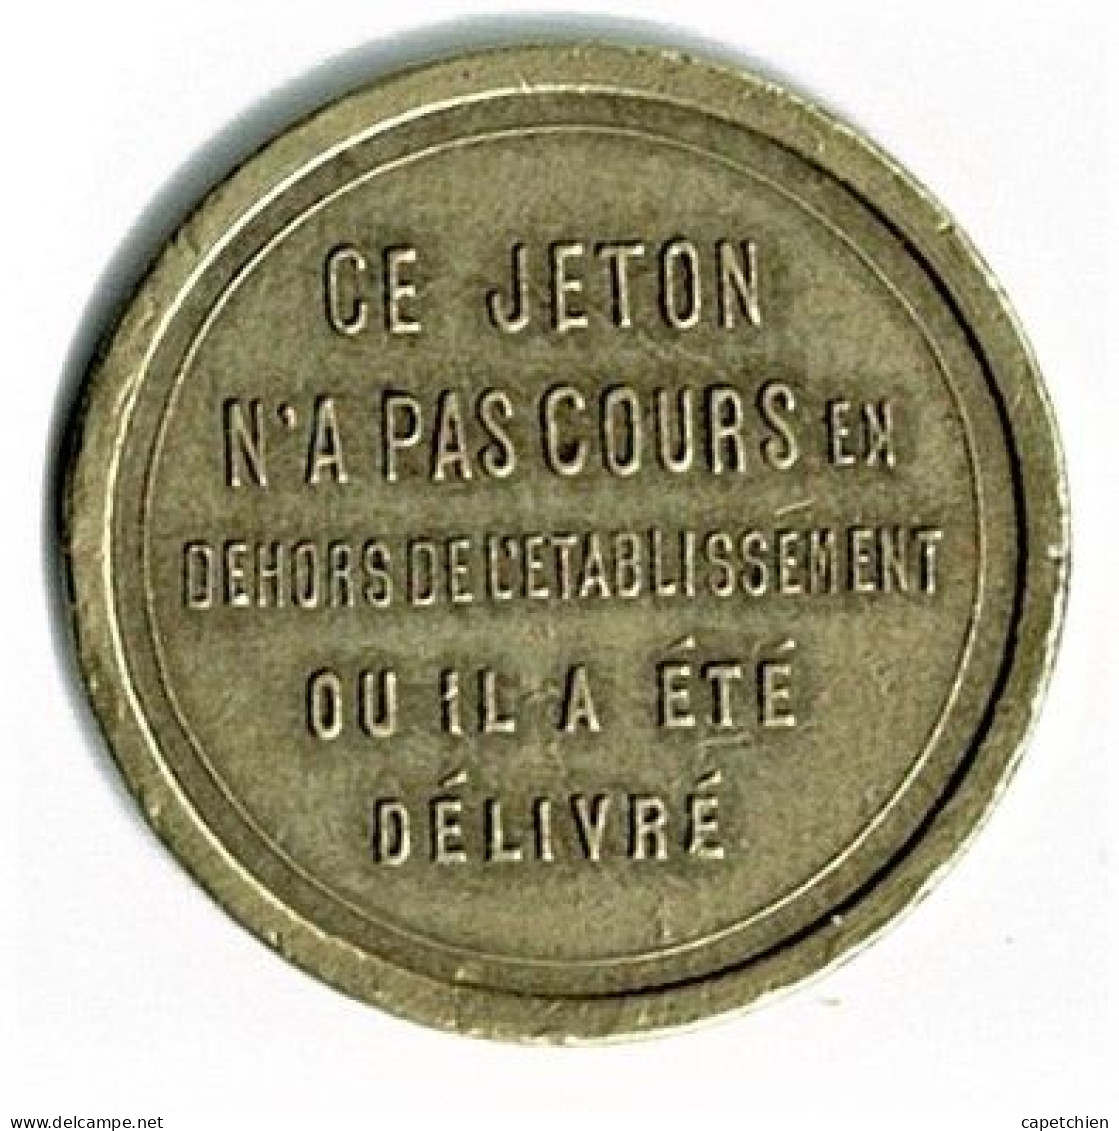 JETON / ORIGINE NON DETERMINEE / 30 Mm / LAITON - Professionnels / De Société